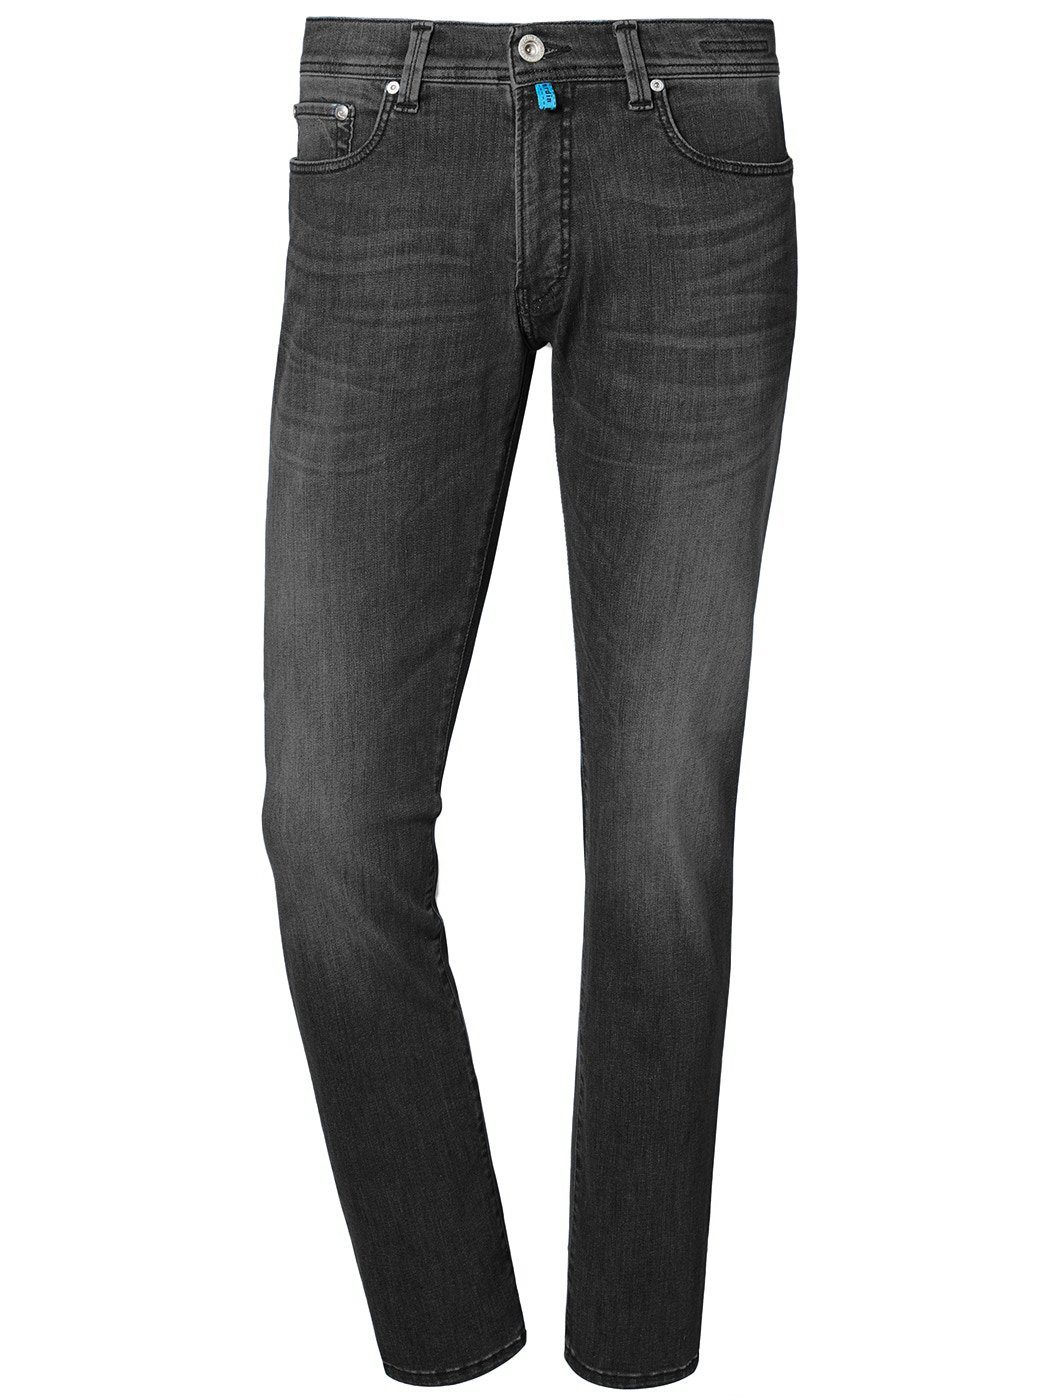 Pierre Cardin 5-Pocket-Jeans PIERRE CARDIN FUTUREFLEX LYON vintage grey light used 3451 8880.15